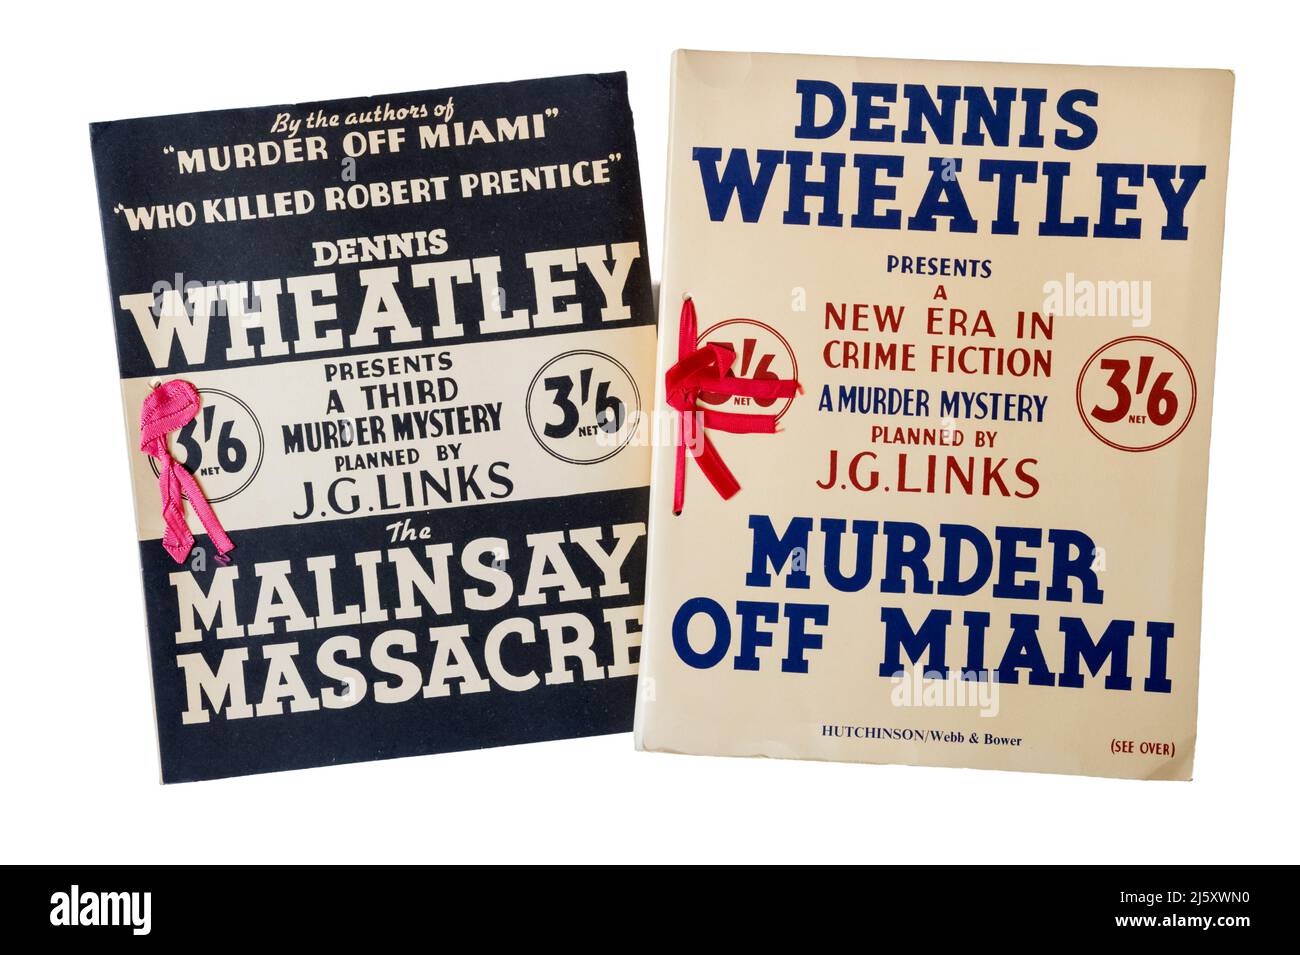 The Malinsay Massacre & Muder Off Miami von Dennis Wheatley präsentiert als lose-Blatt-Verbrechen Dossiers oder Fallakten mit Notizen und Beweisen. Stockfoto